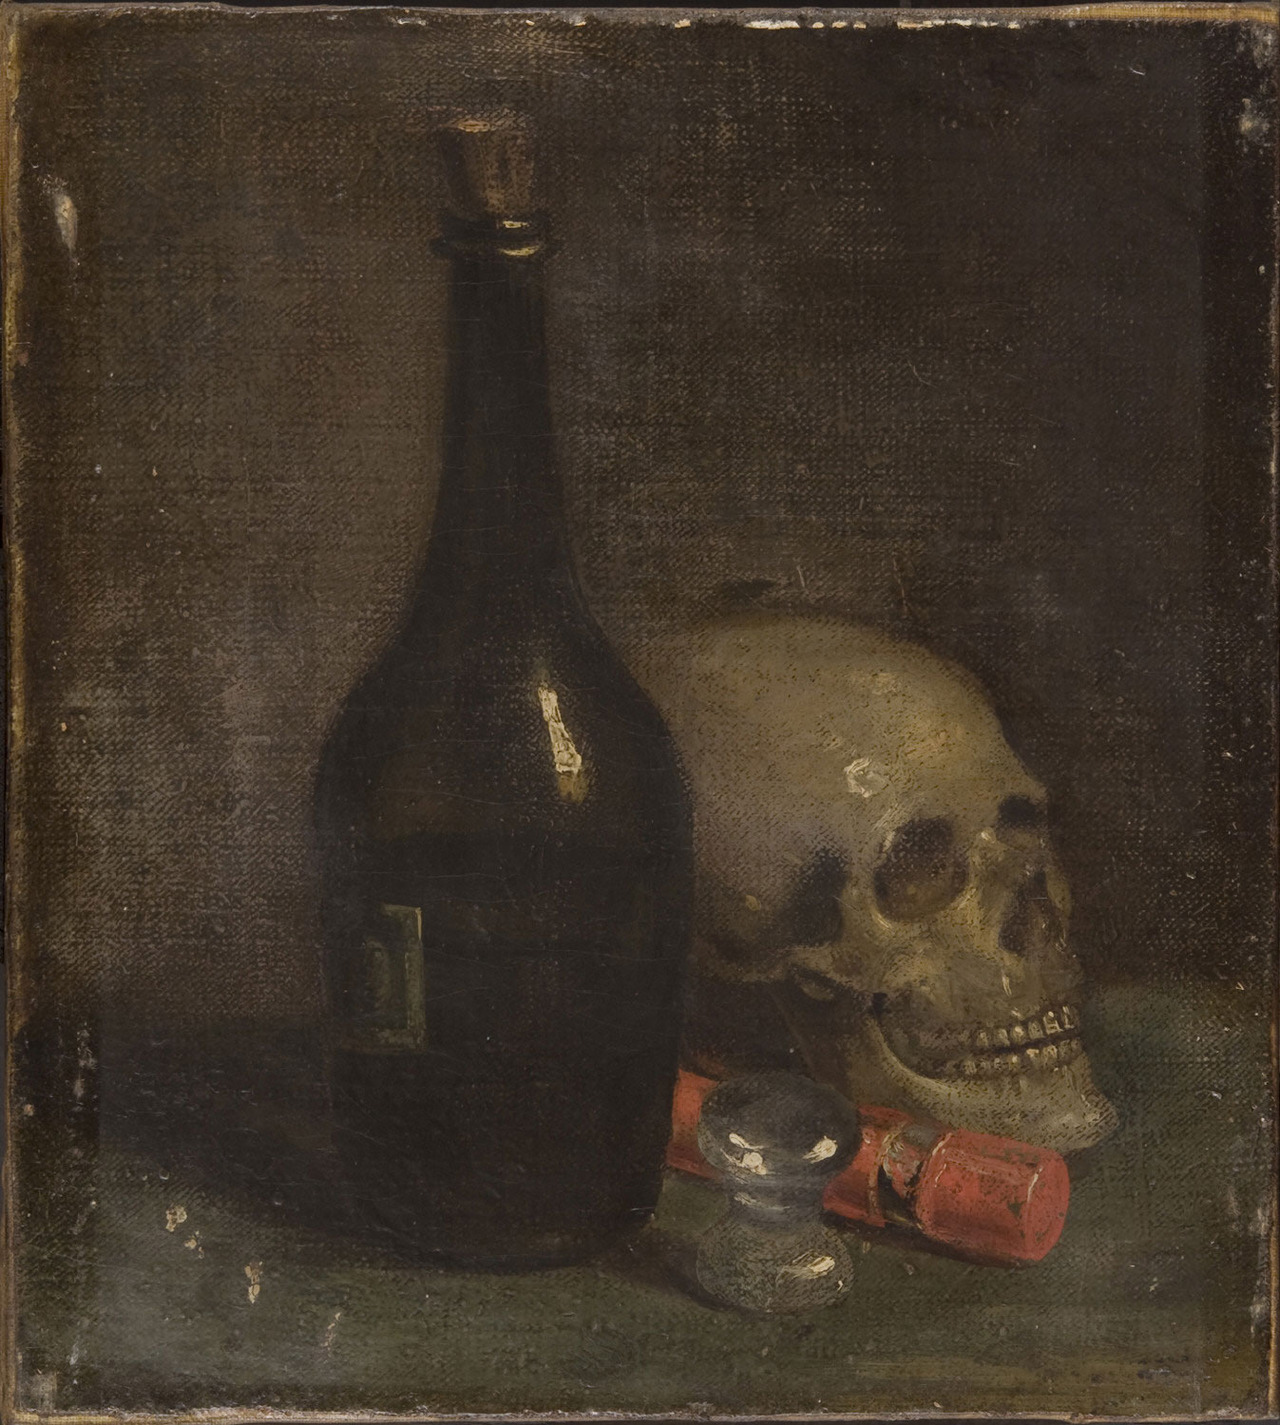 Î‘Ï€Î¿Ï„Î­Î»ÎµÏƒÎ¼Î± ÎµÎ¹ÎºÏŒÎ½Î±Ï‚ Î³Î¹Î± wine and death painting